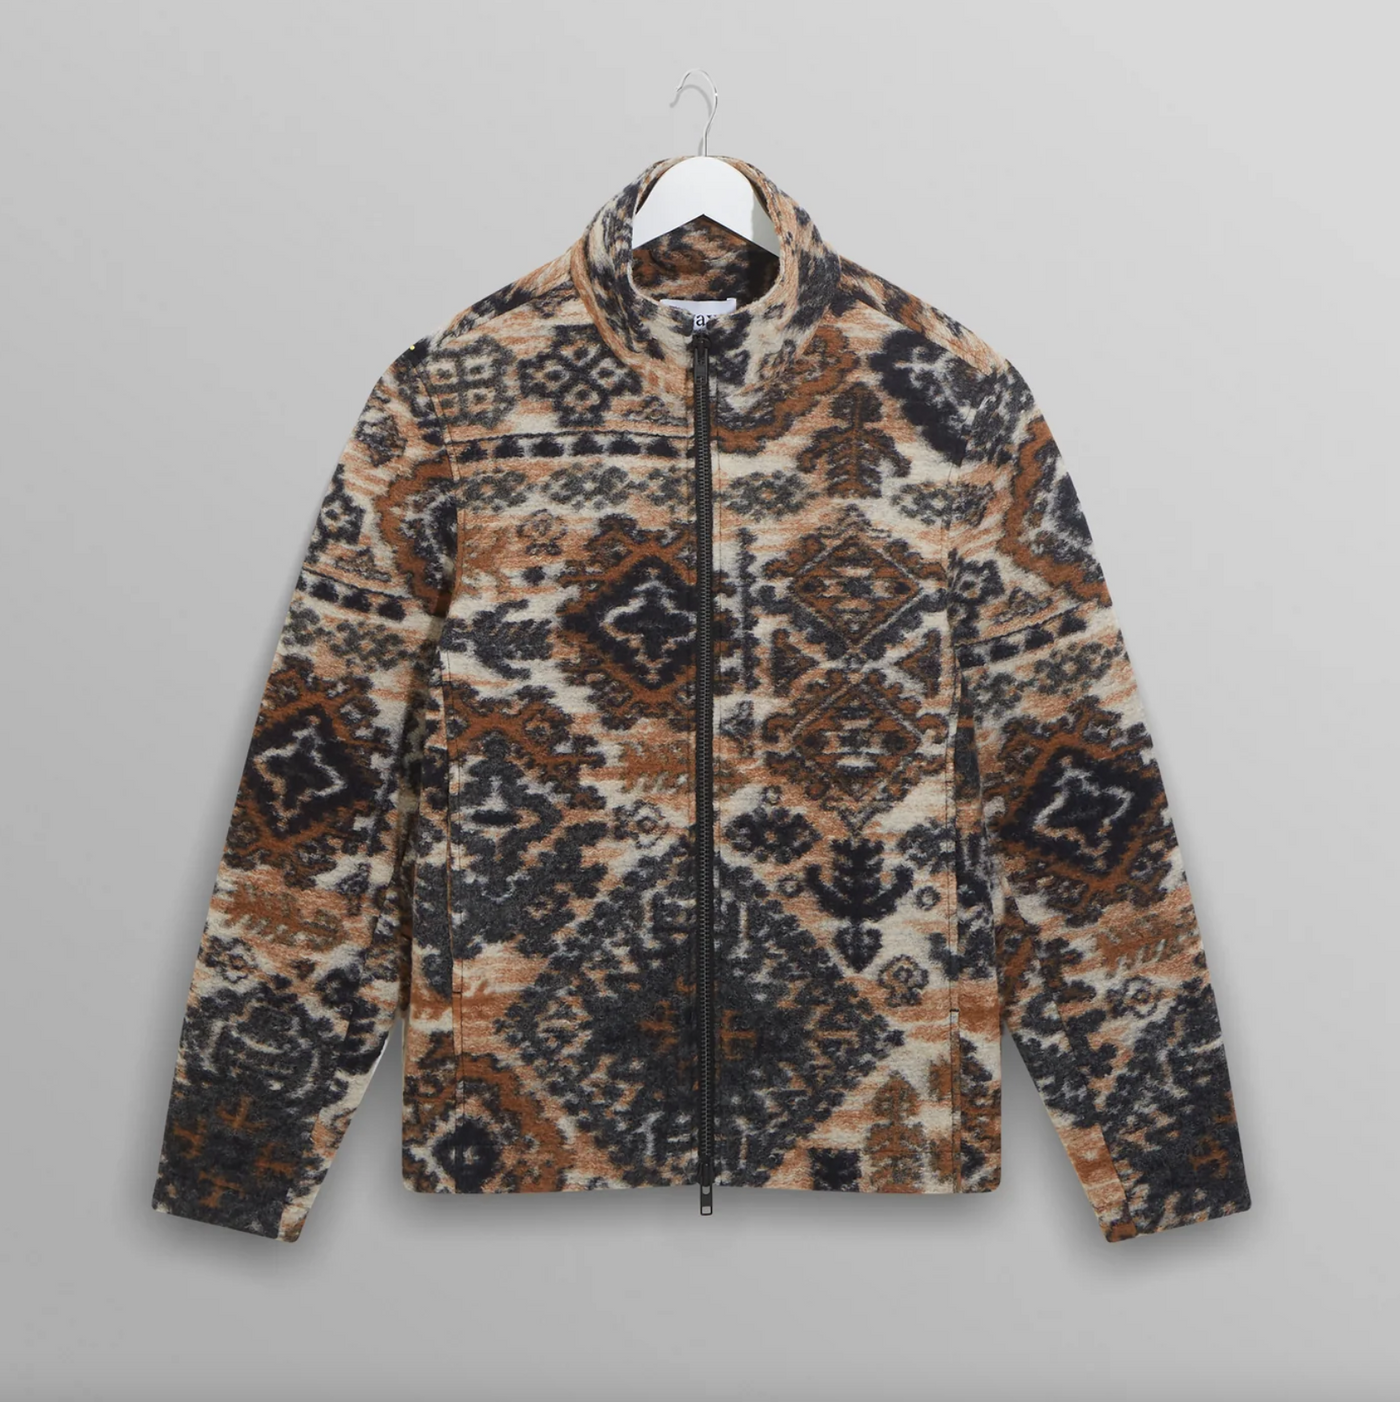 Wax London - Ornate Fleece Cozi Jacket - Beige / Navy